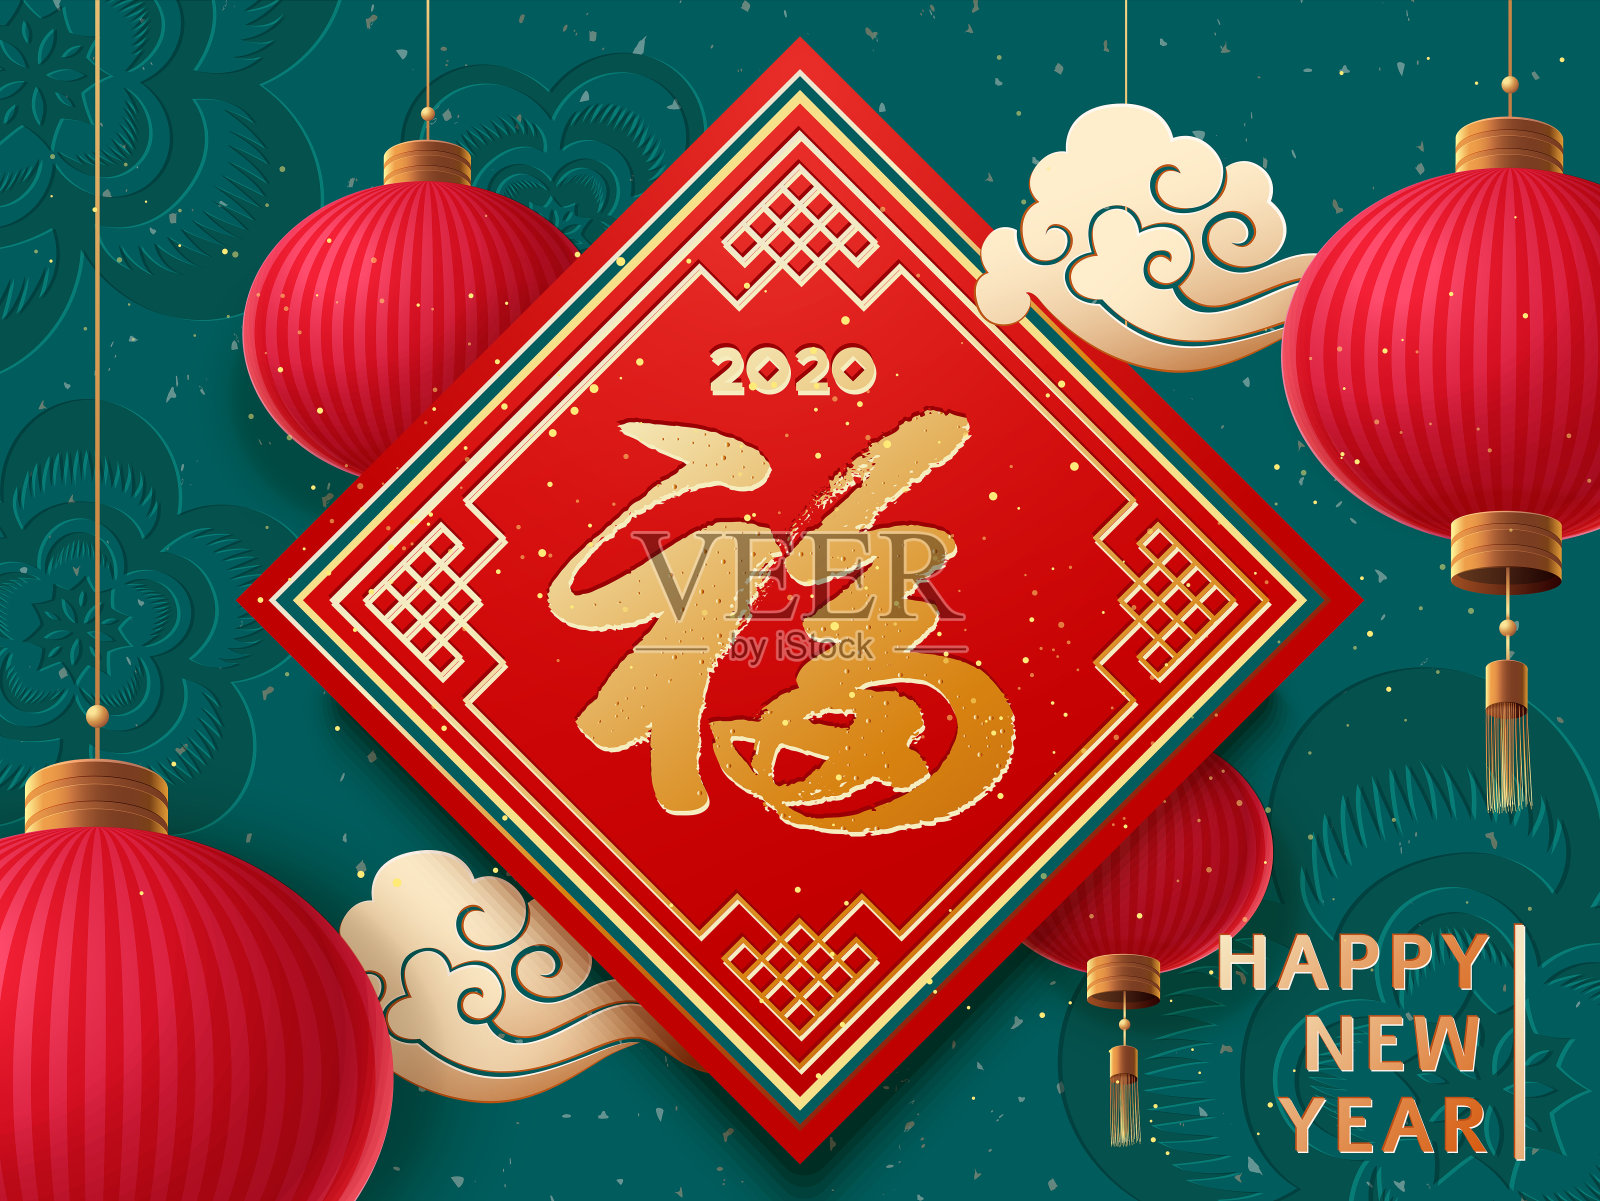 鼠年快乐!2020年新年。对联与中国字阜。以《红灯笼高高挂》和《亚洲云》为背景设计模板素材